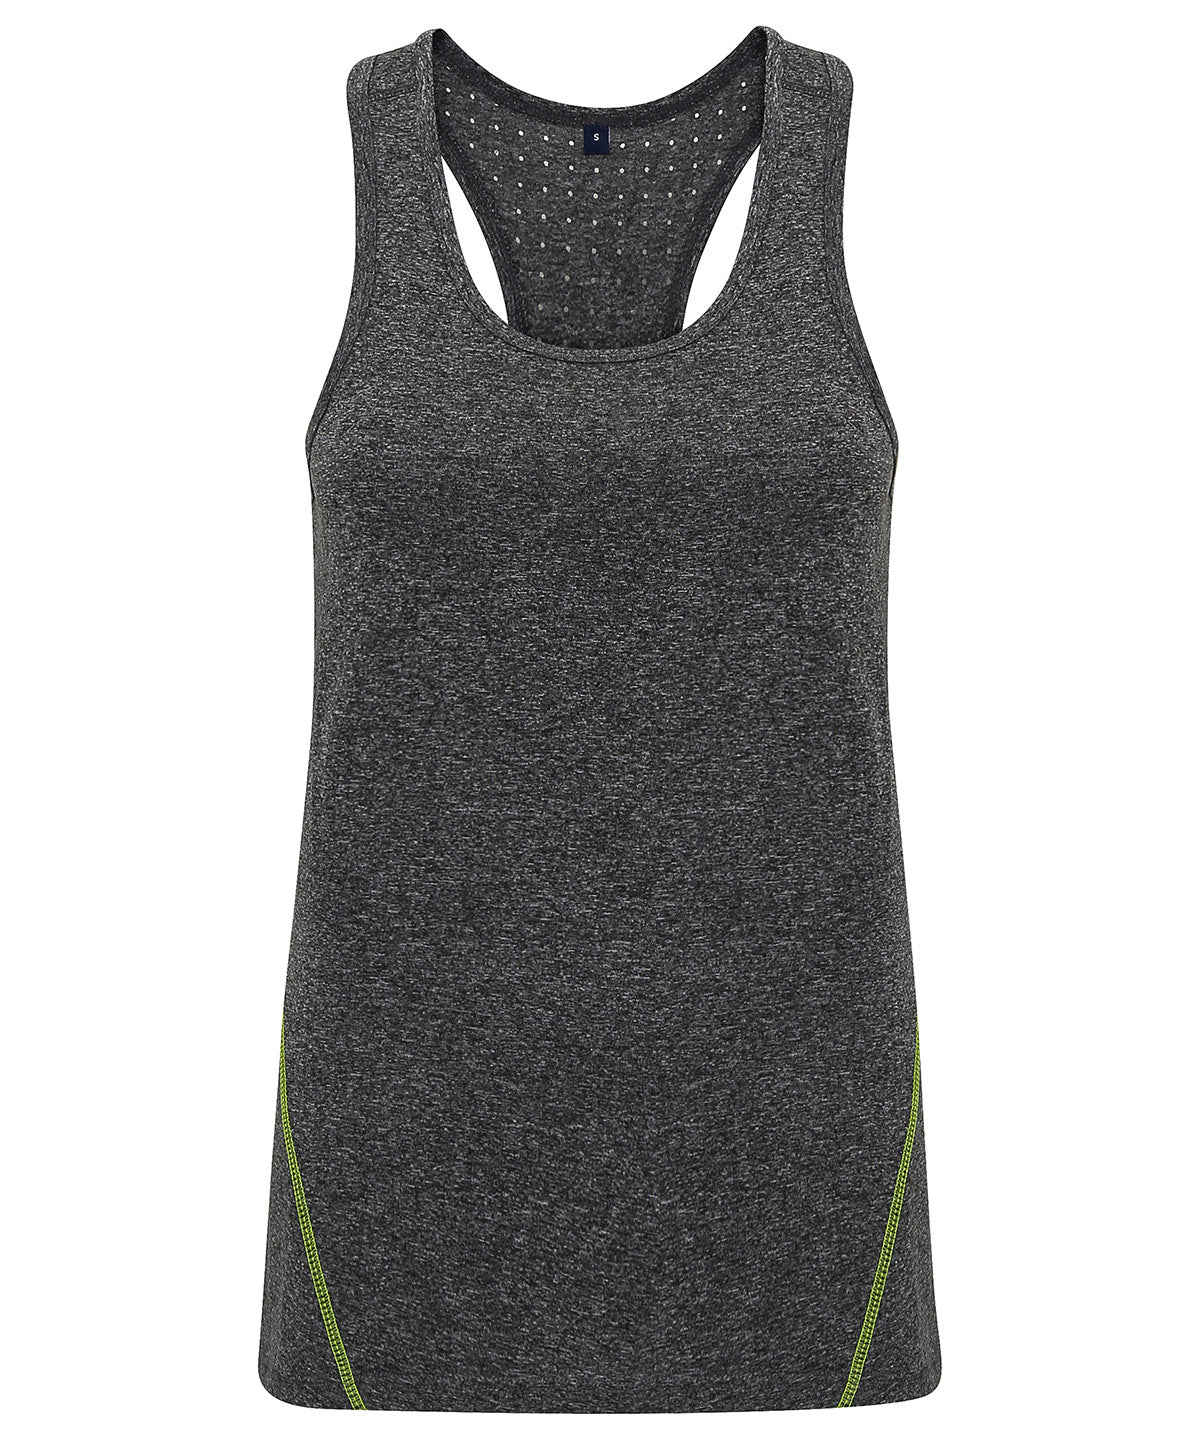 Vesti - Women's TriDri® 'laser Cut' Vest